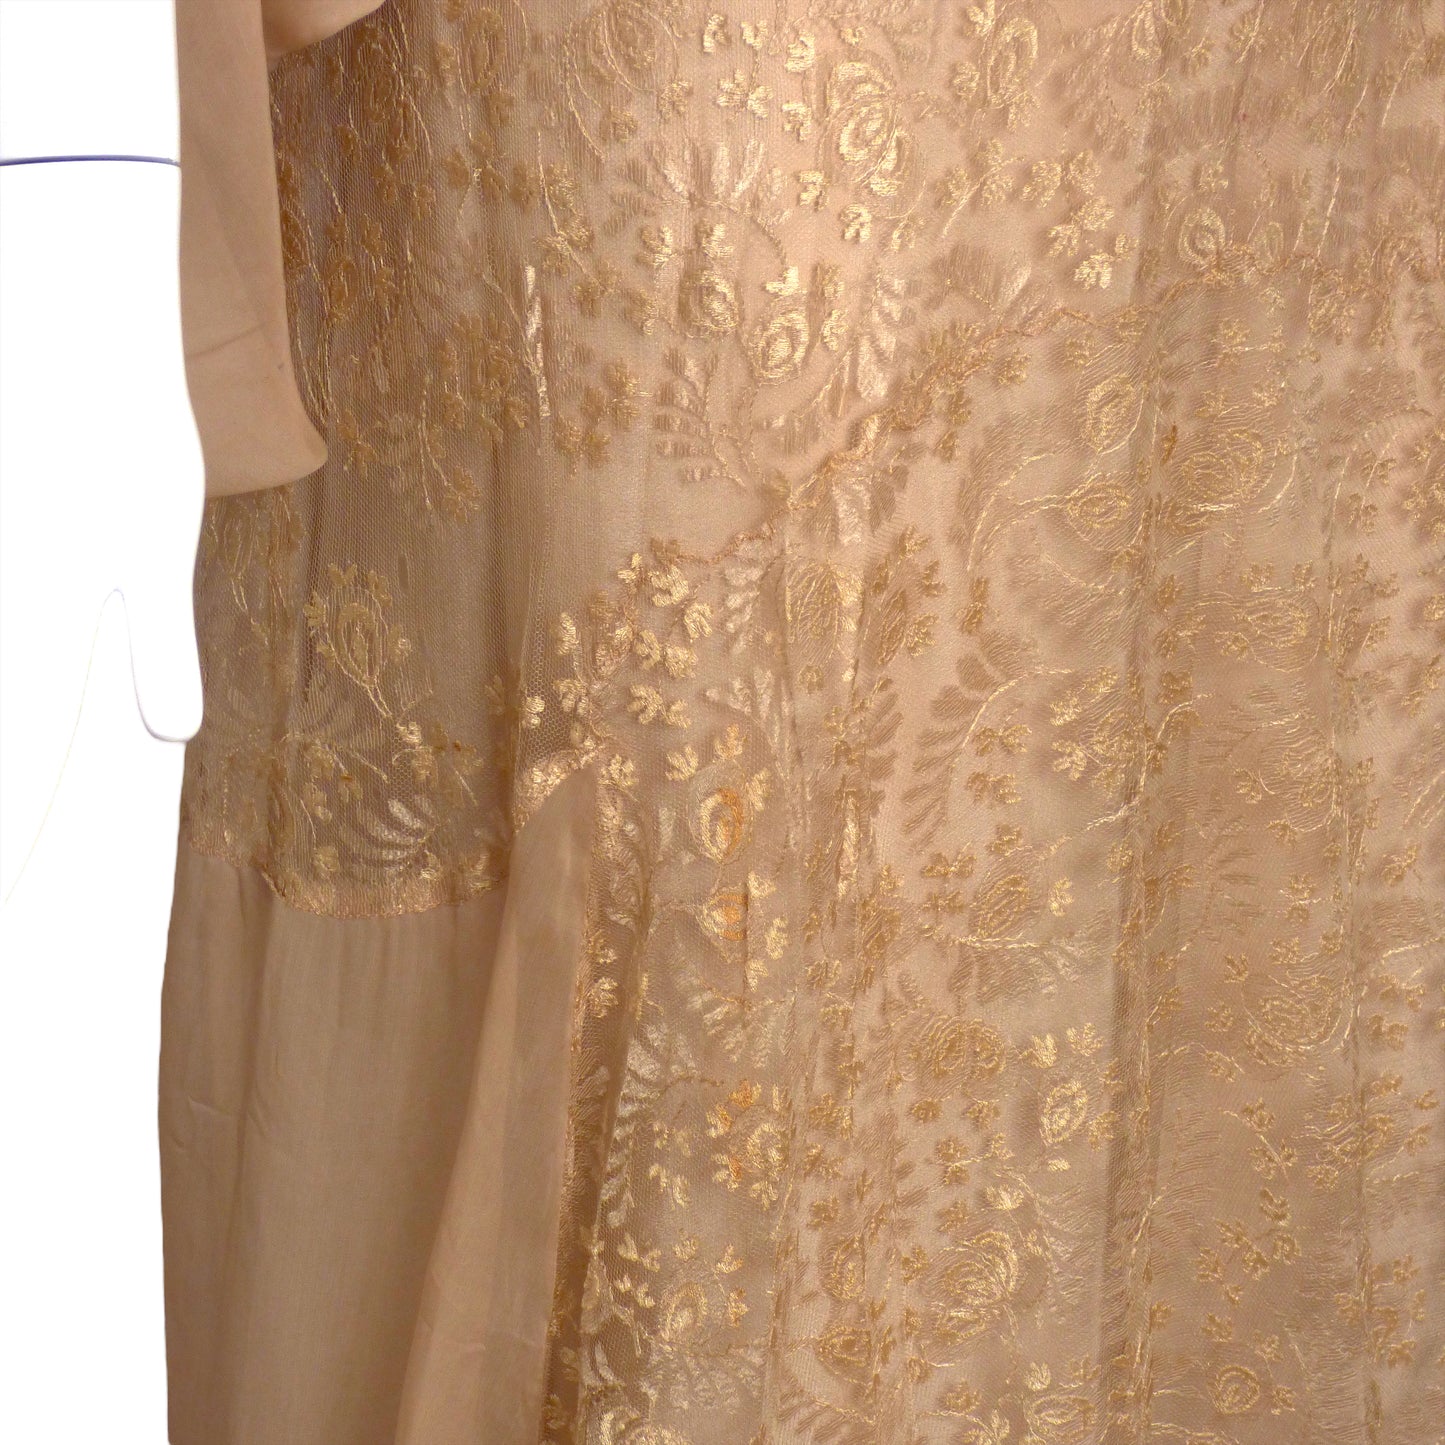 c.1930 Beige Lace & Chiffon Dress, Size-14